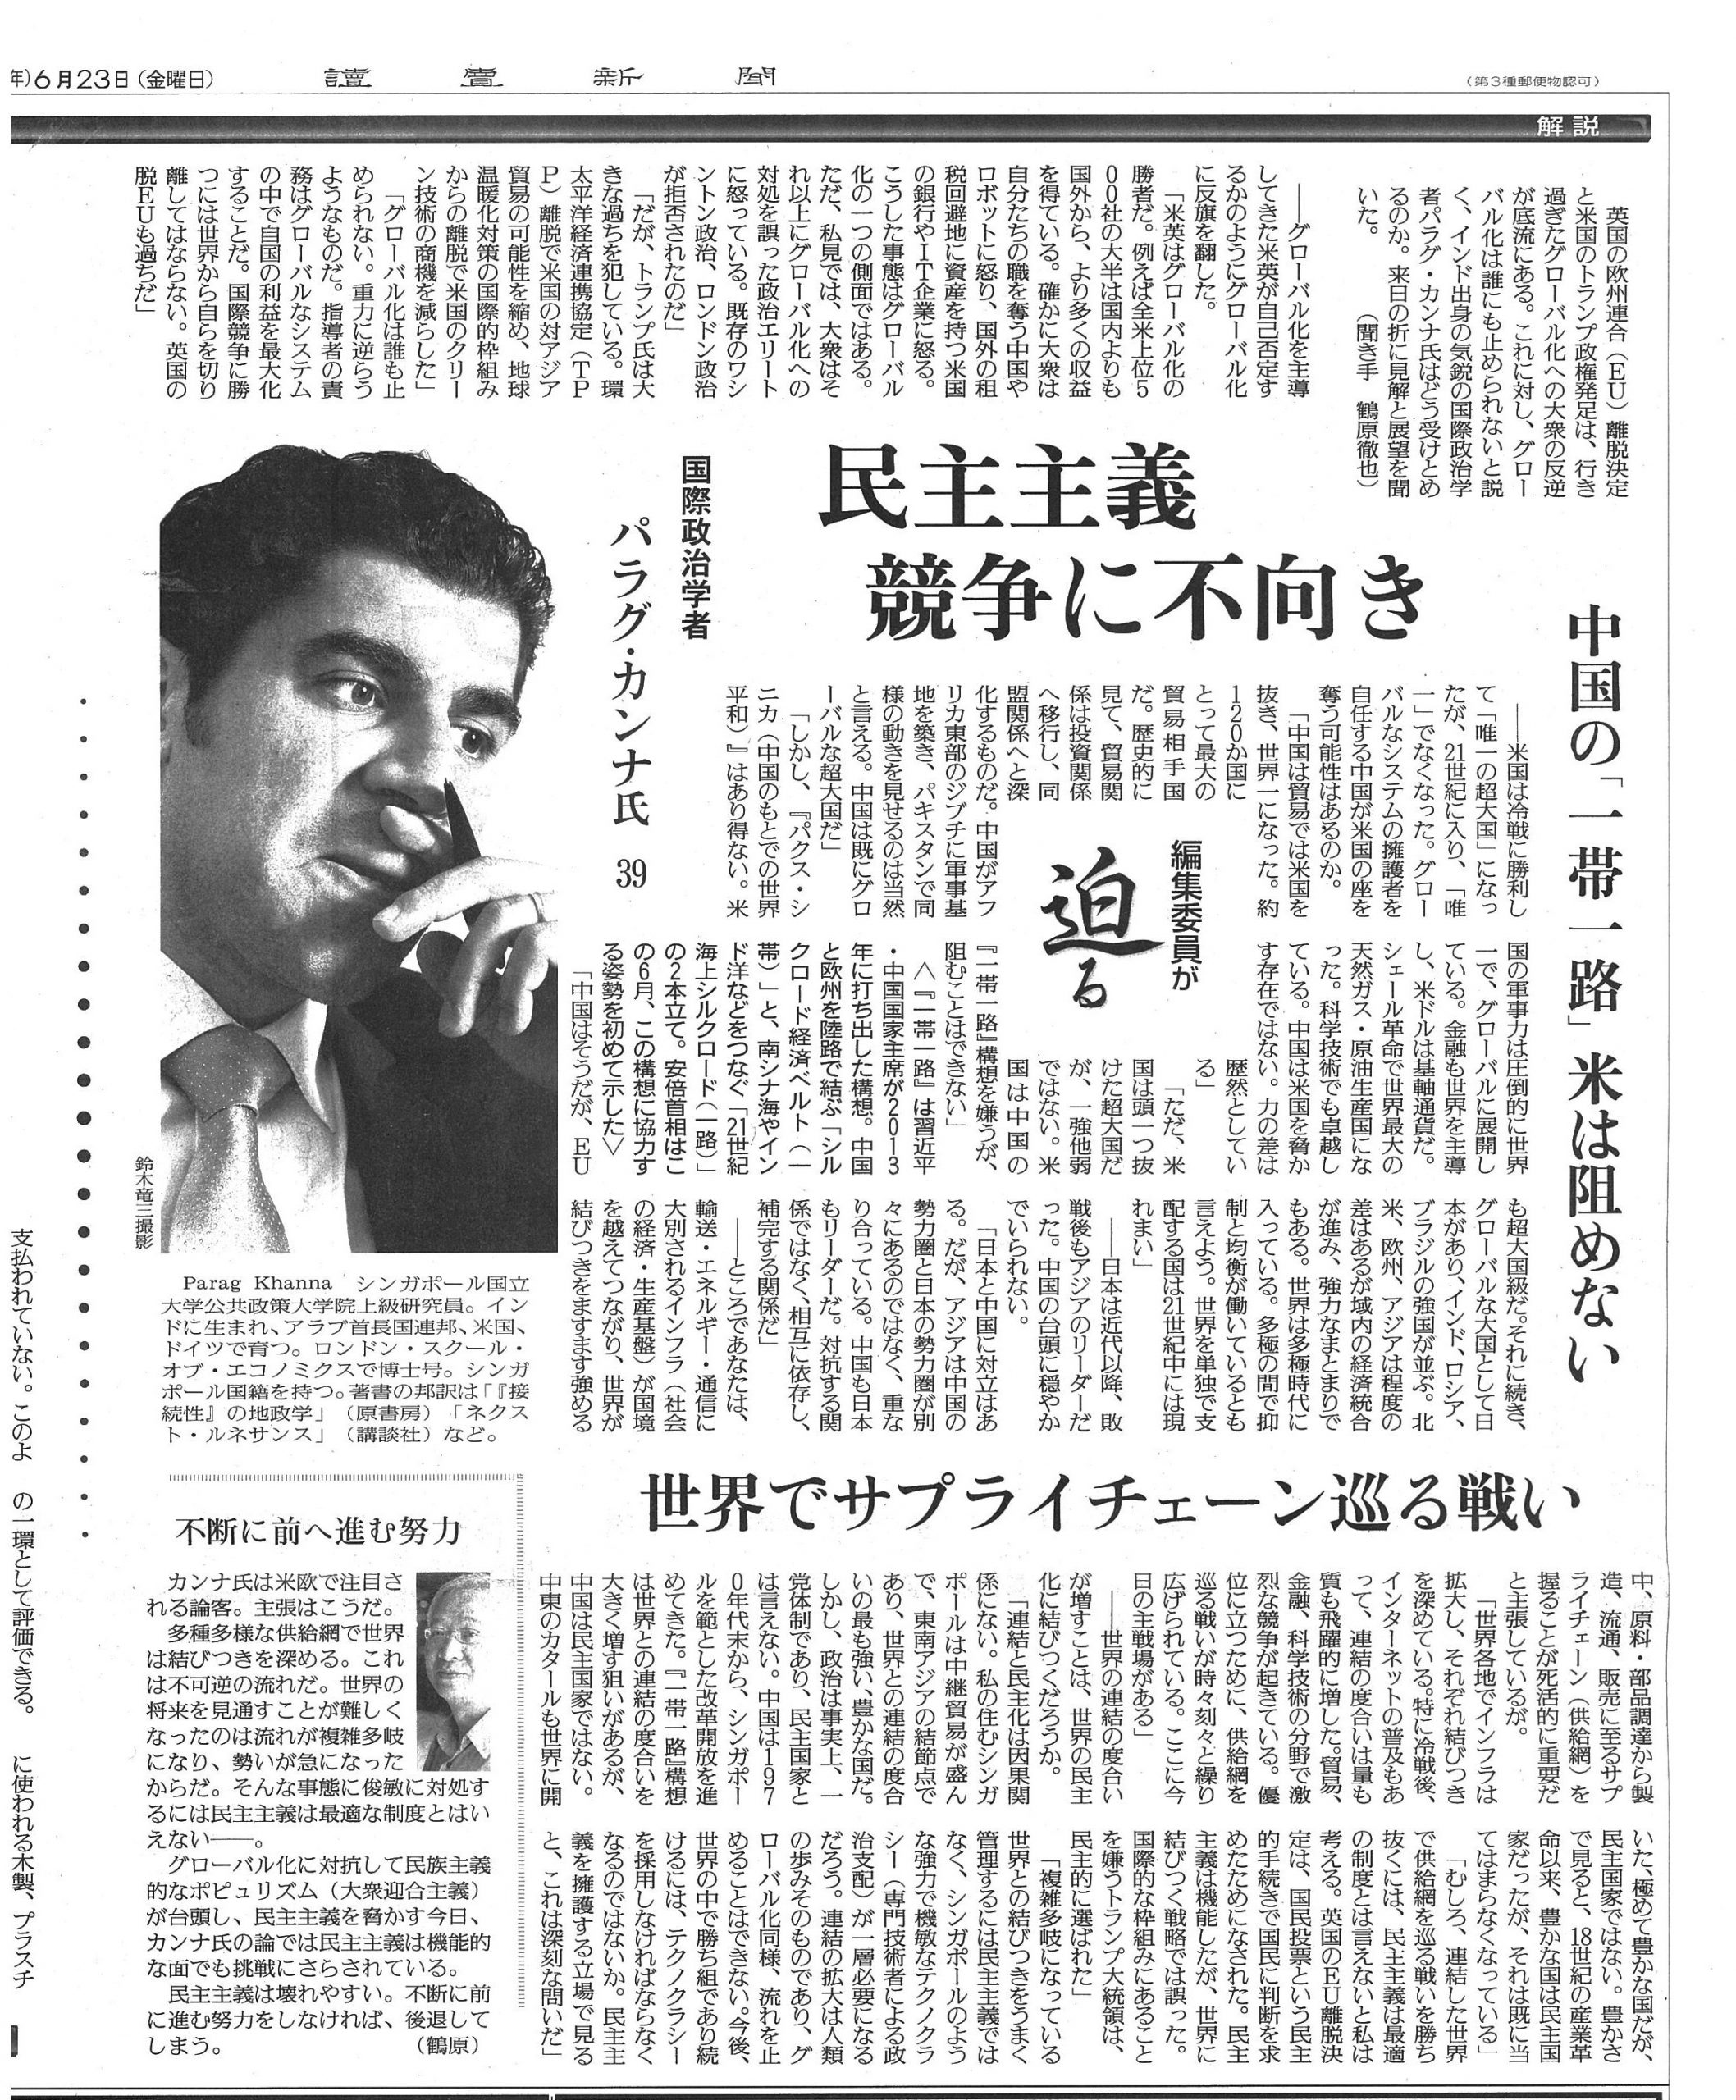 Feature interview with Yomiuri Shimbun